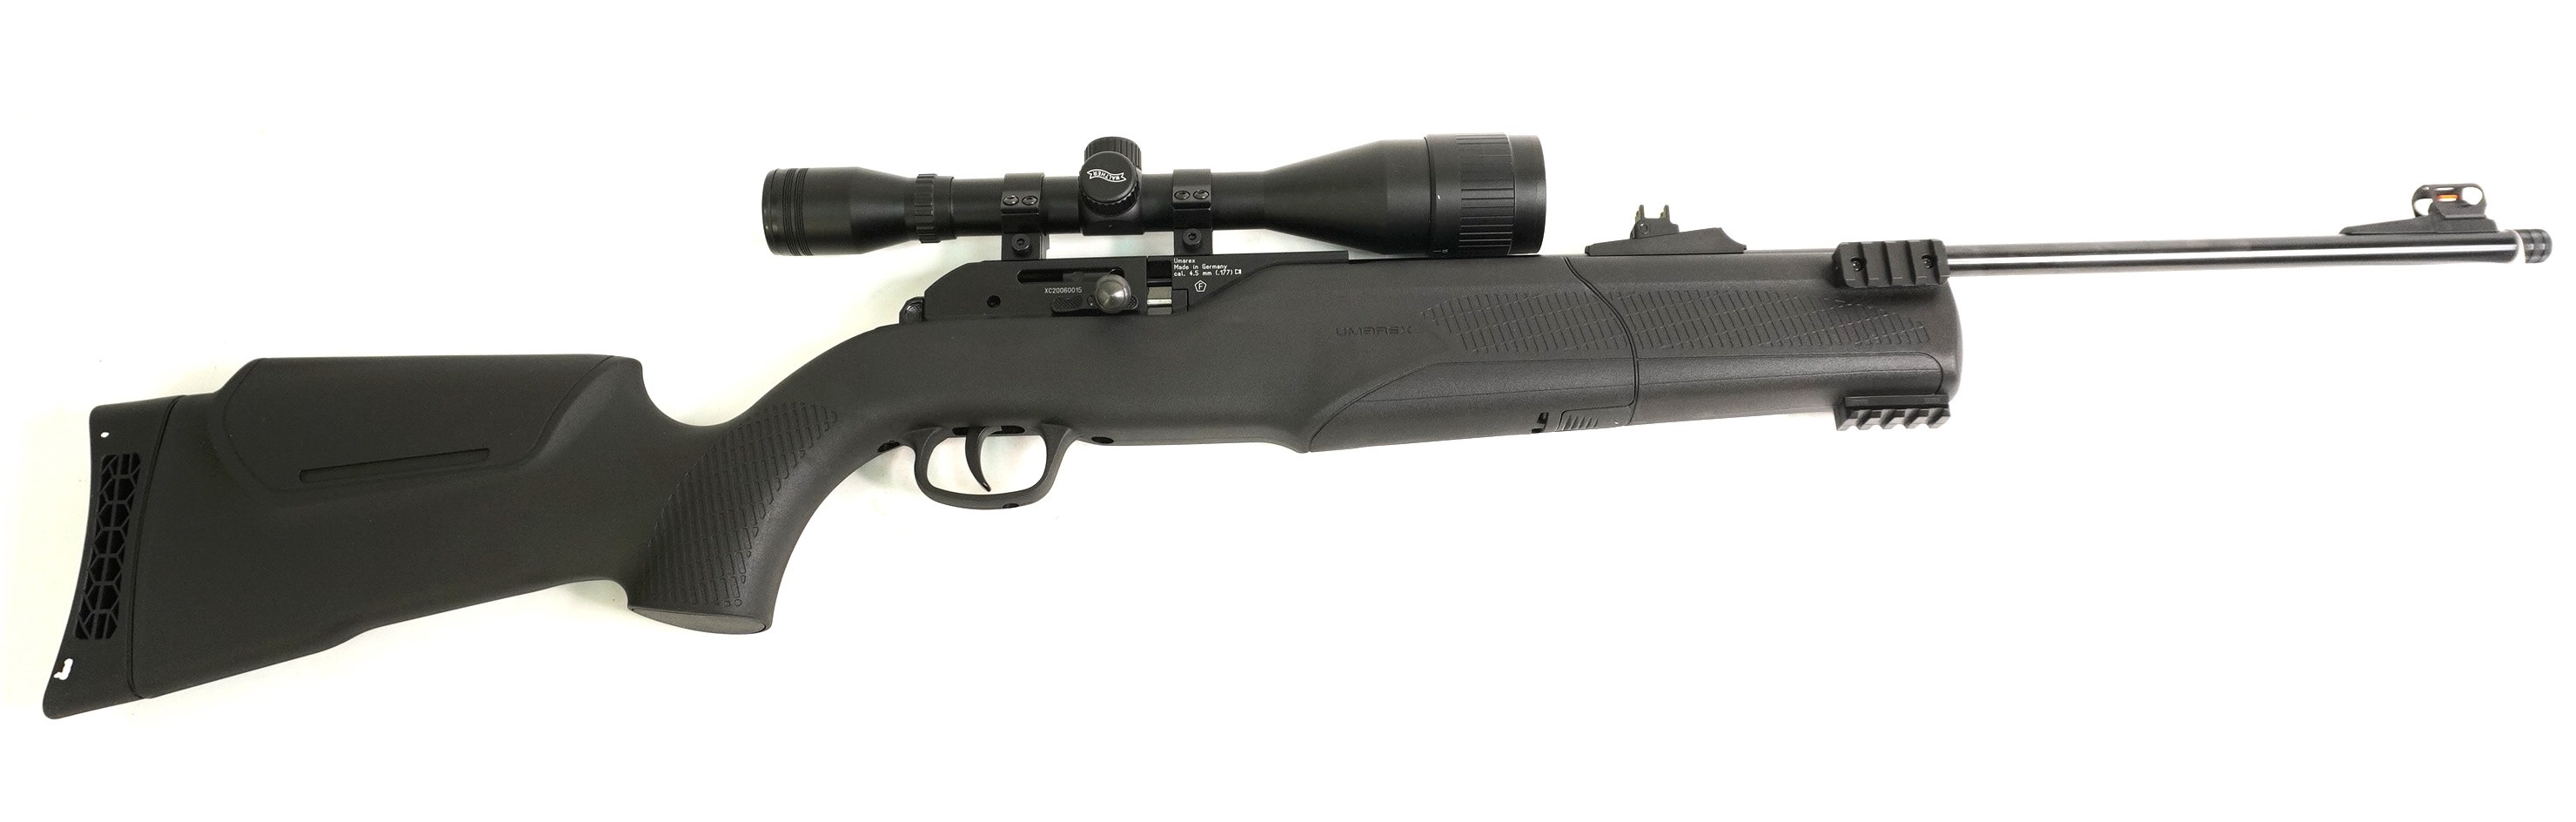 Пневматическая винтовка Umarex 850 M2 Target Kit (CO₂, прицел 6x42), изображение 6